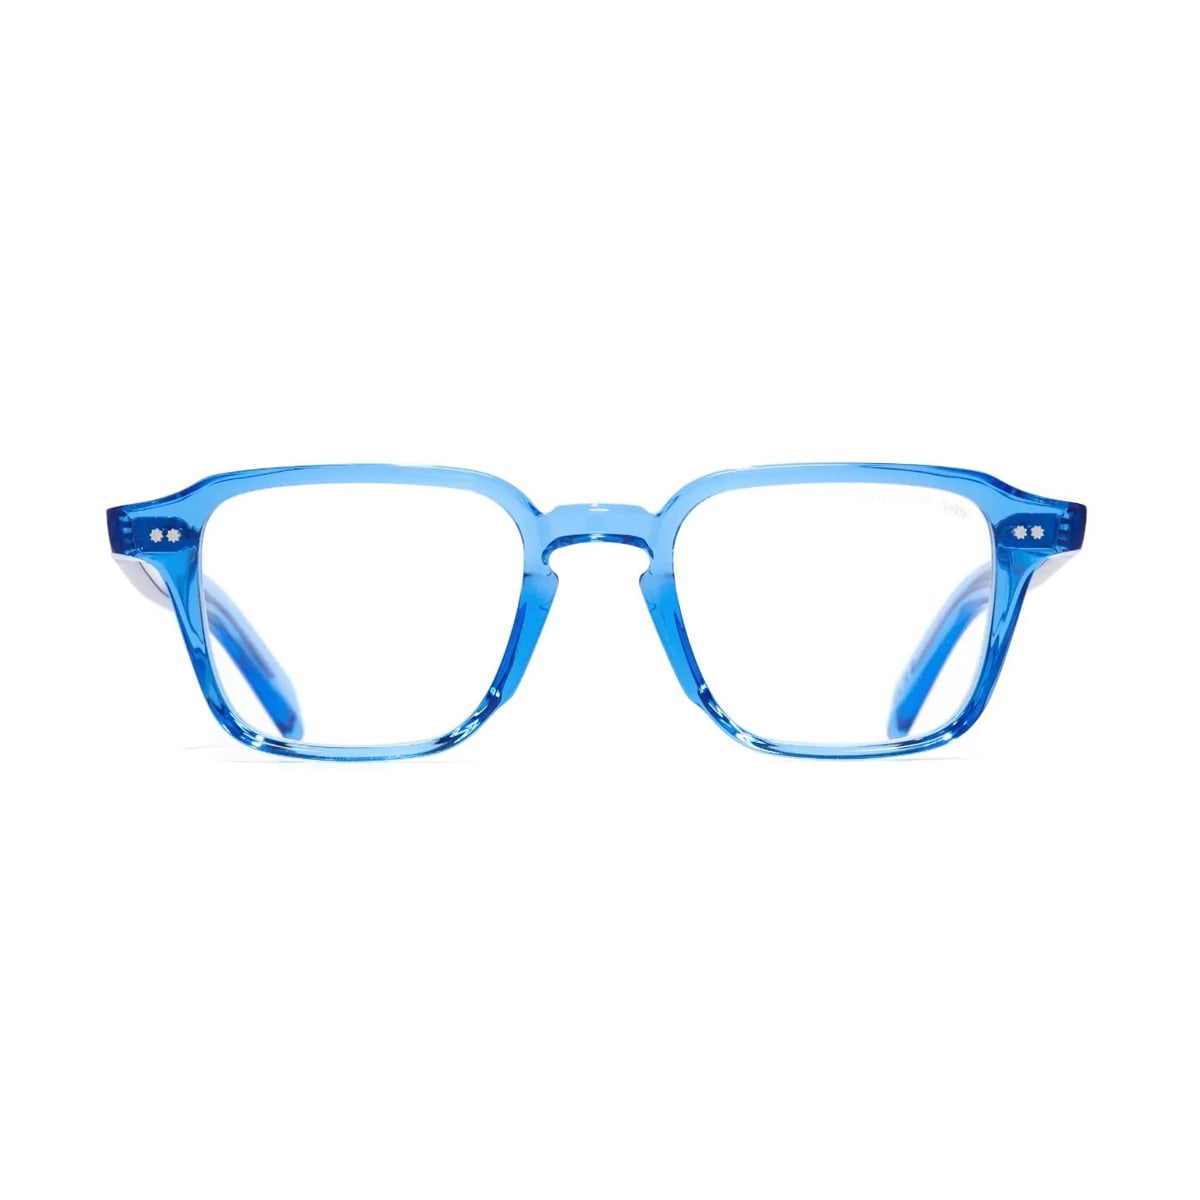 Gr07 A7 Blue Crystal Glasses